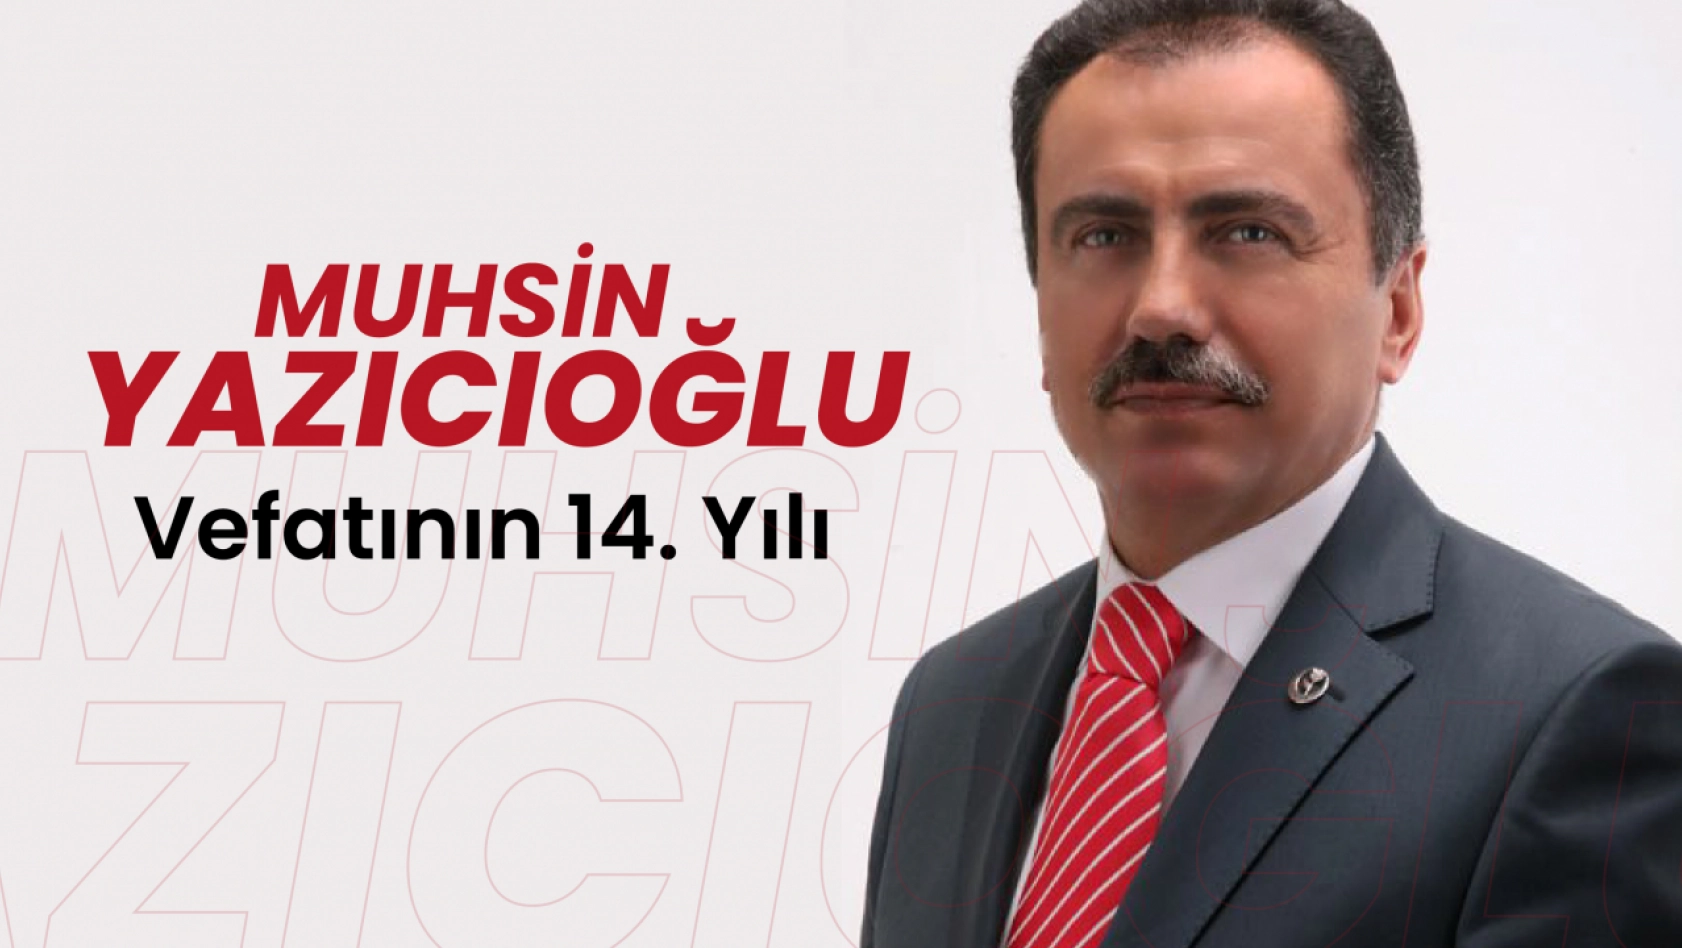 Muhsin Yazıcıoğlu'nun Vefatının 14. Yılı